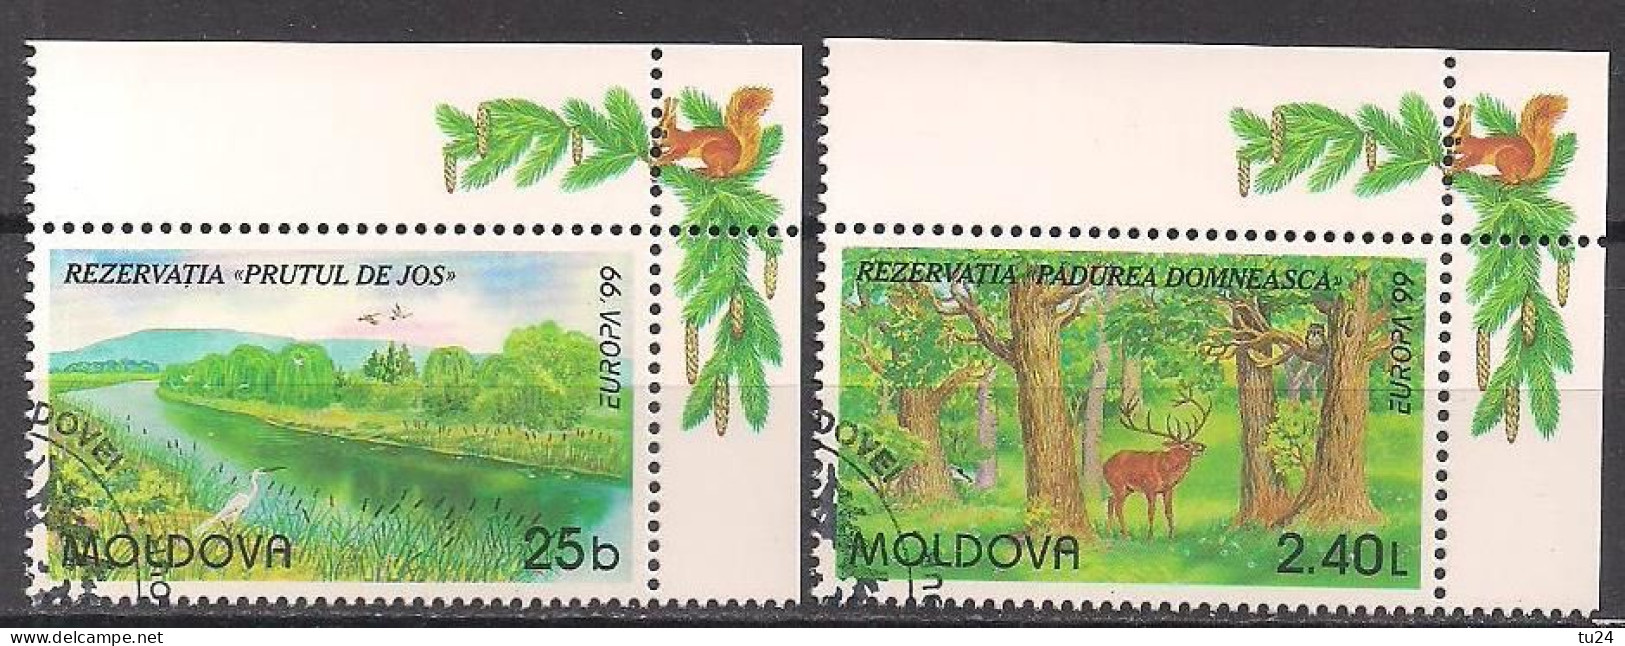 Moldawien / Moldova  (1999)  Mi.Nr.  305 + 306  Gest. / Used  (3fc06) EUROPA - 1999